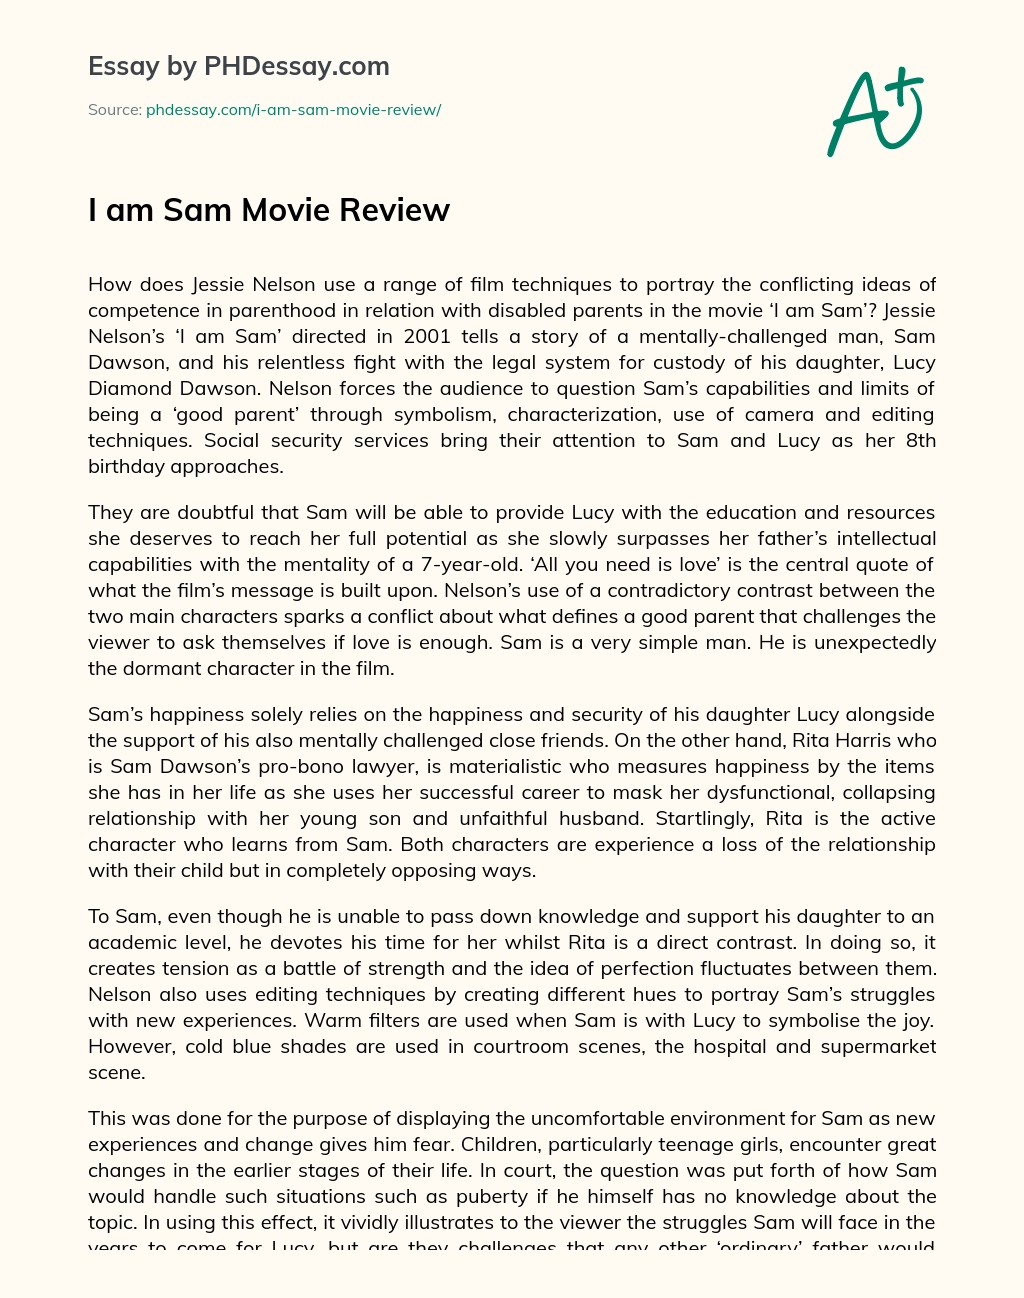 I am Sam Movie Review essay